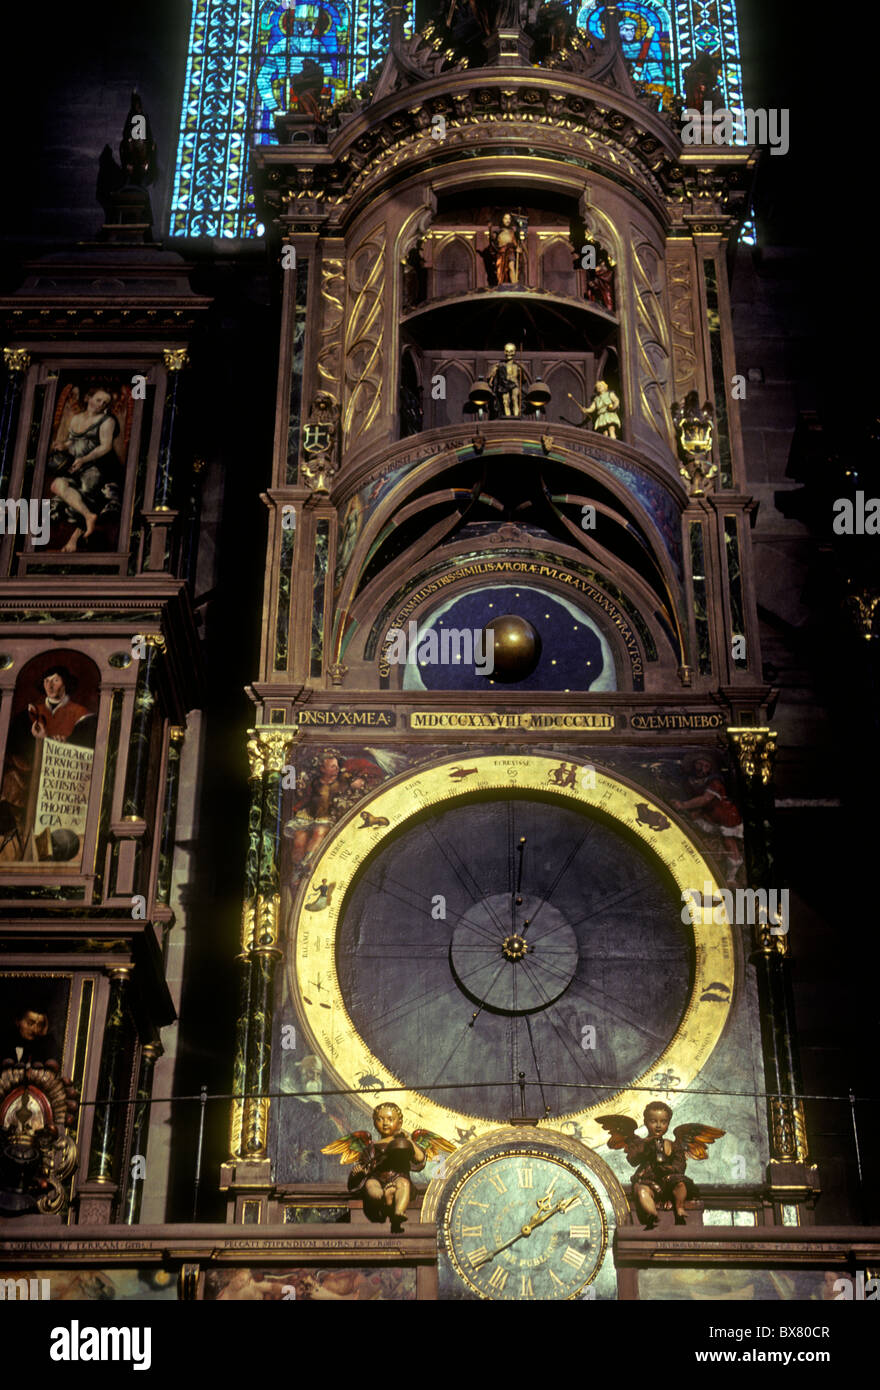 Astronomische Uhr, mechanische Uhr, Straßburg Dom, Cathedral Square, La  Place de la Cathedrale, Straßburg, Elsass, Frankreich, Europa  Stockfotografie - Alamy